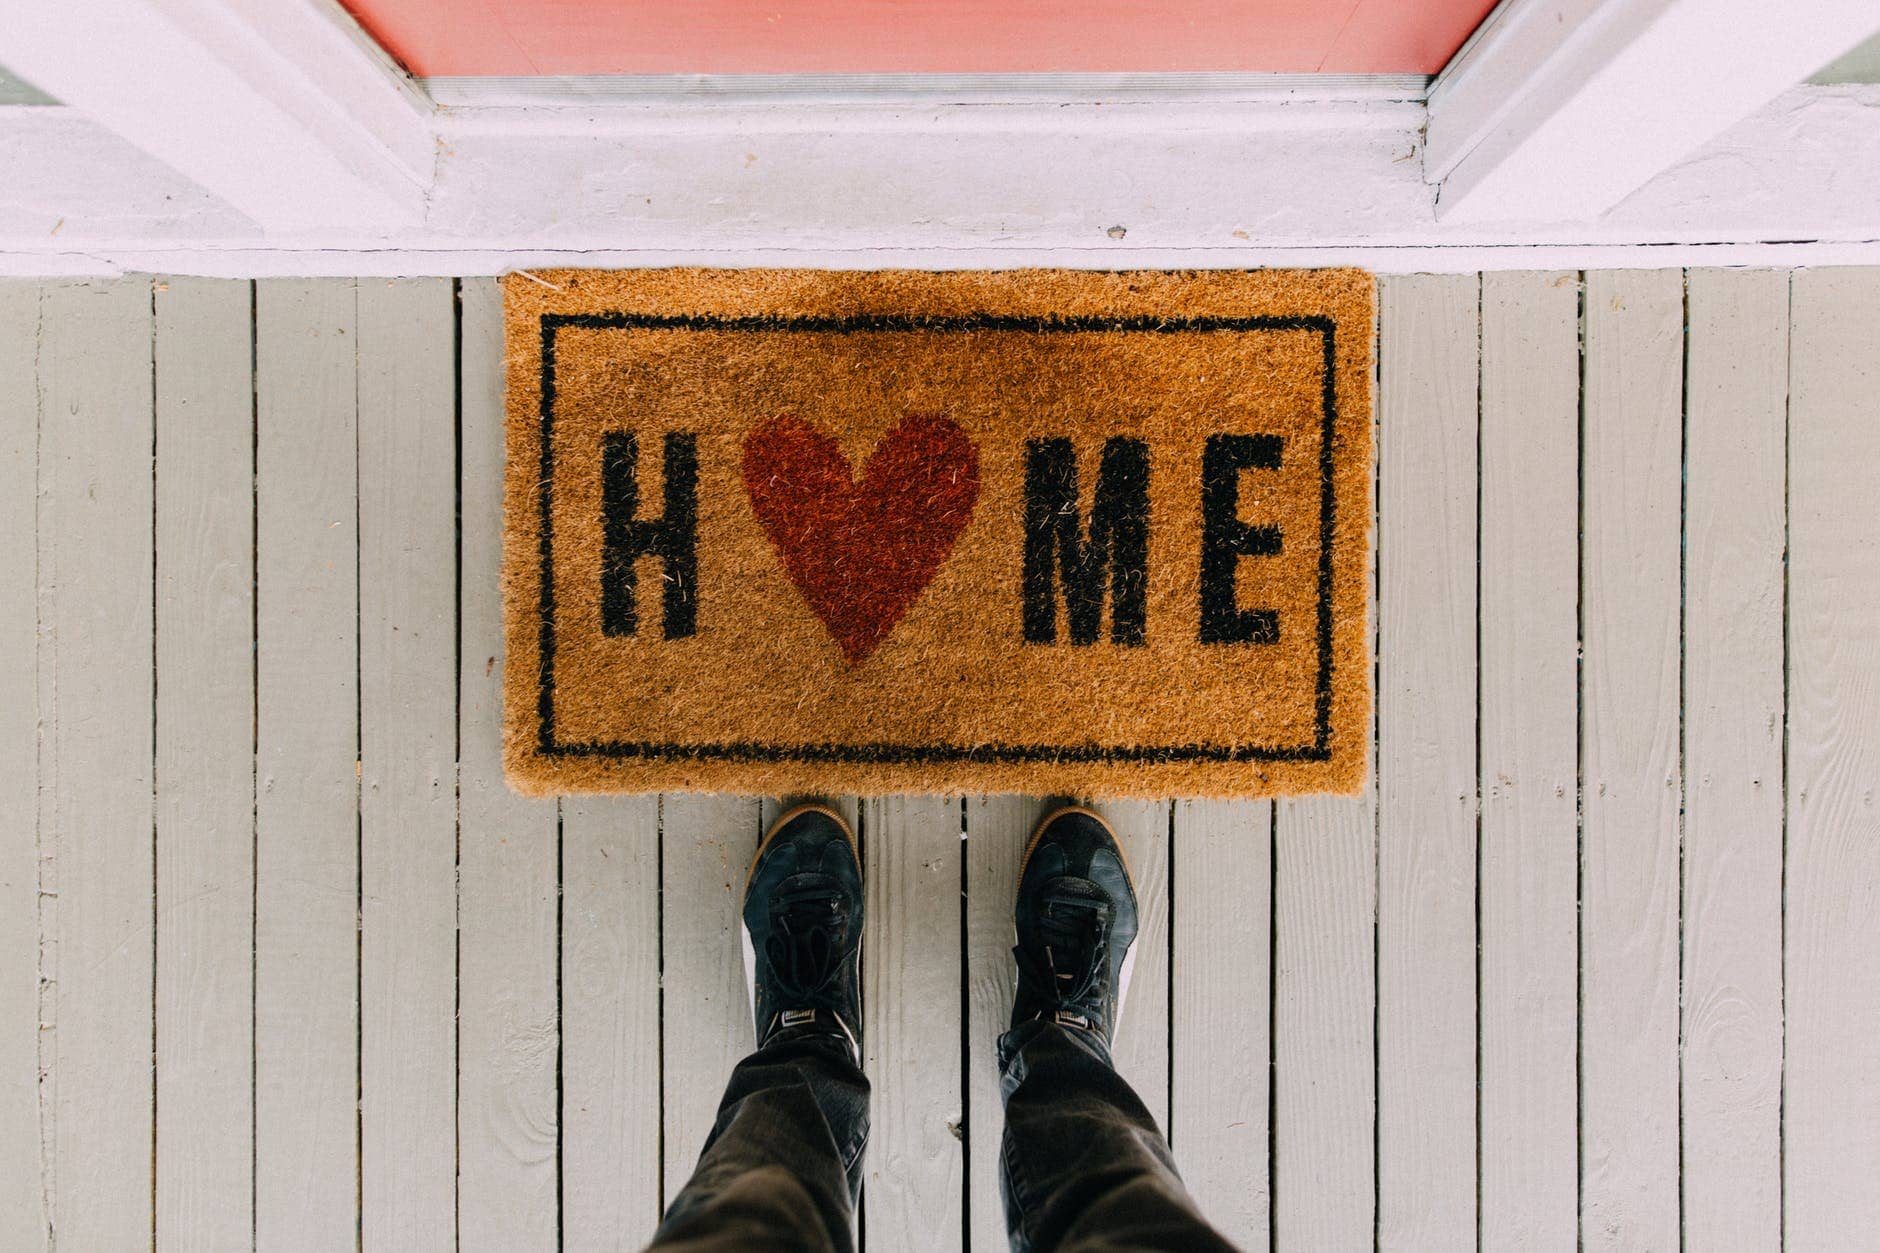 Doormat Of A Home